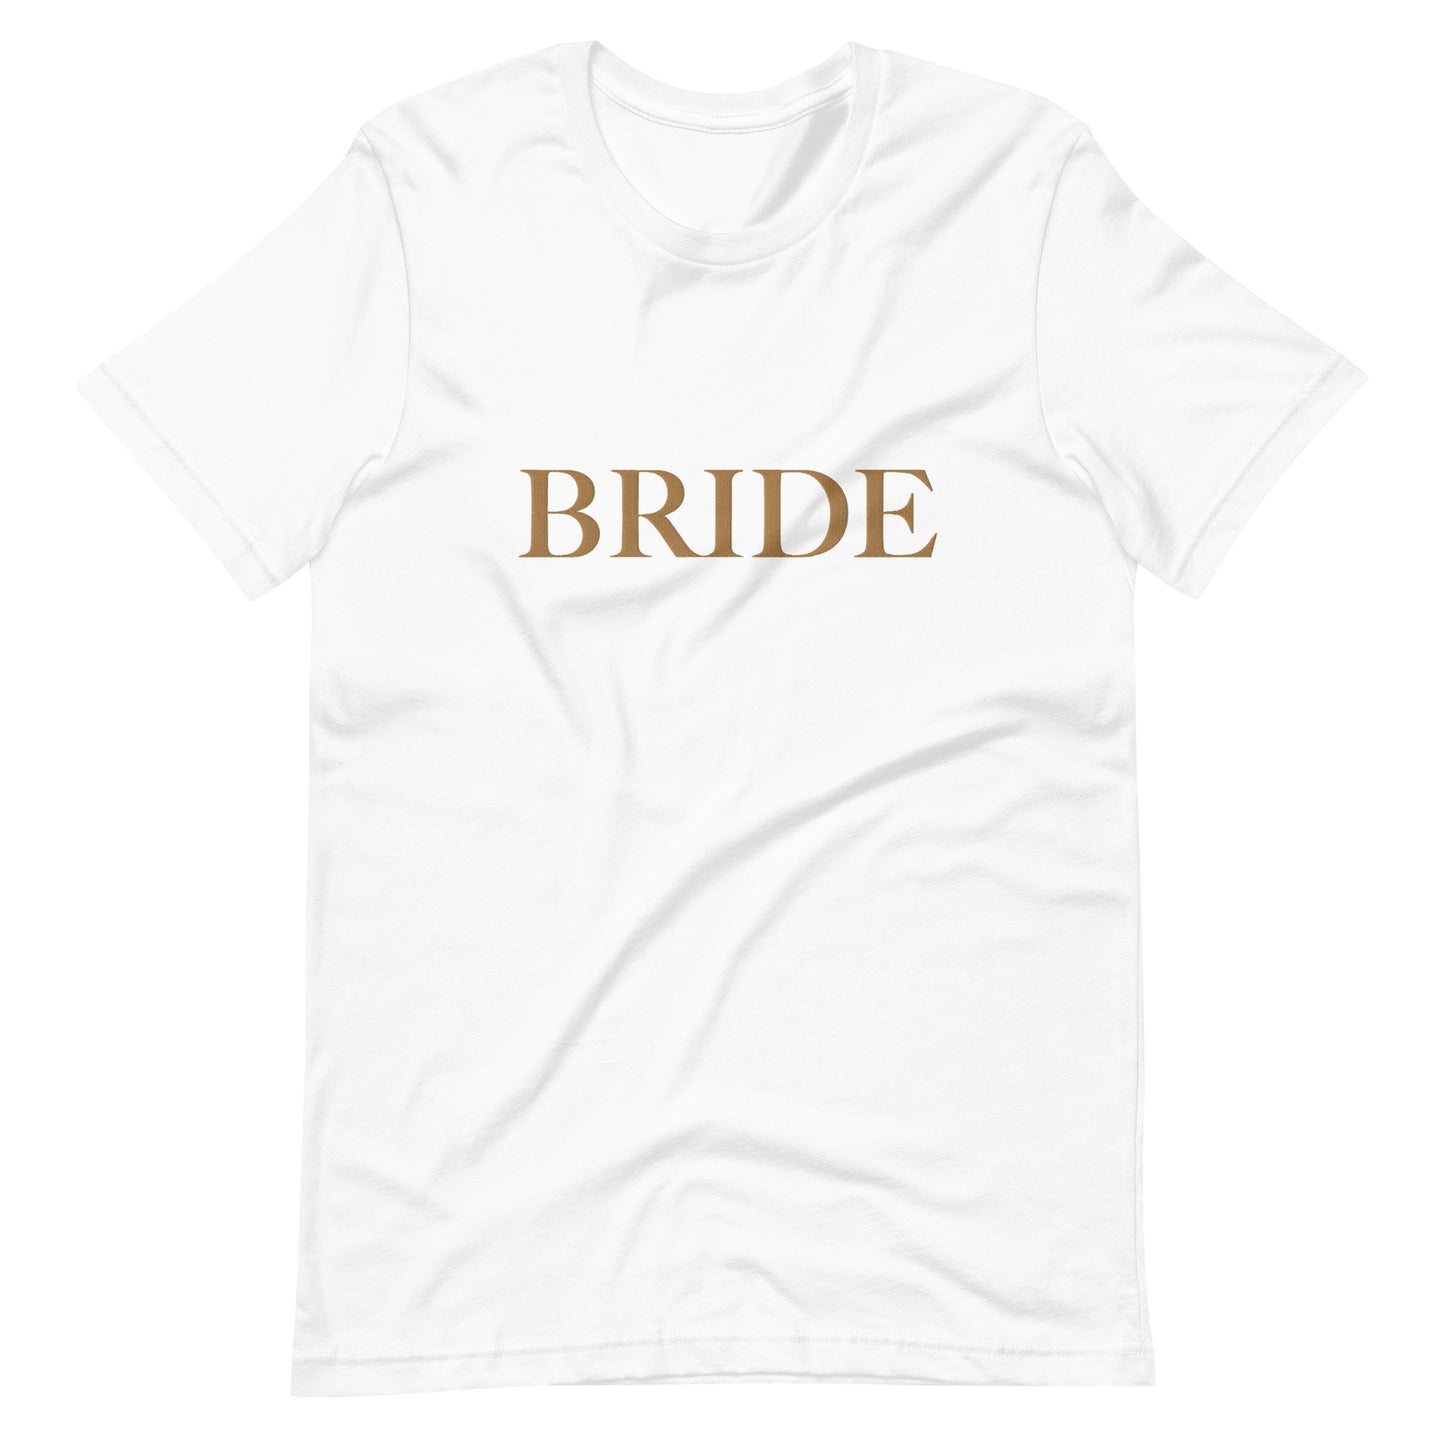 Bride Statement T-Shirt